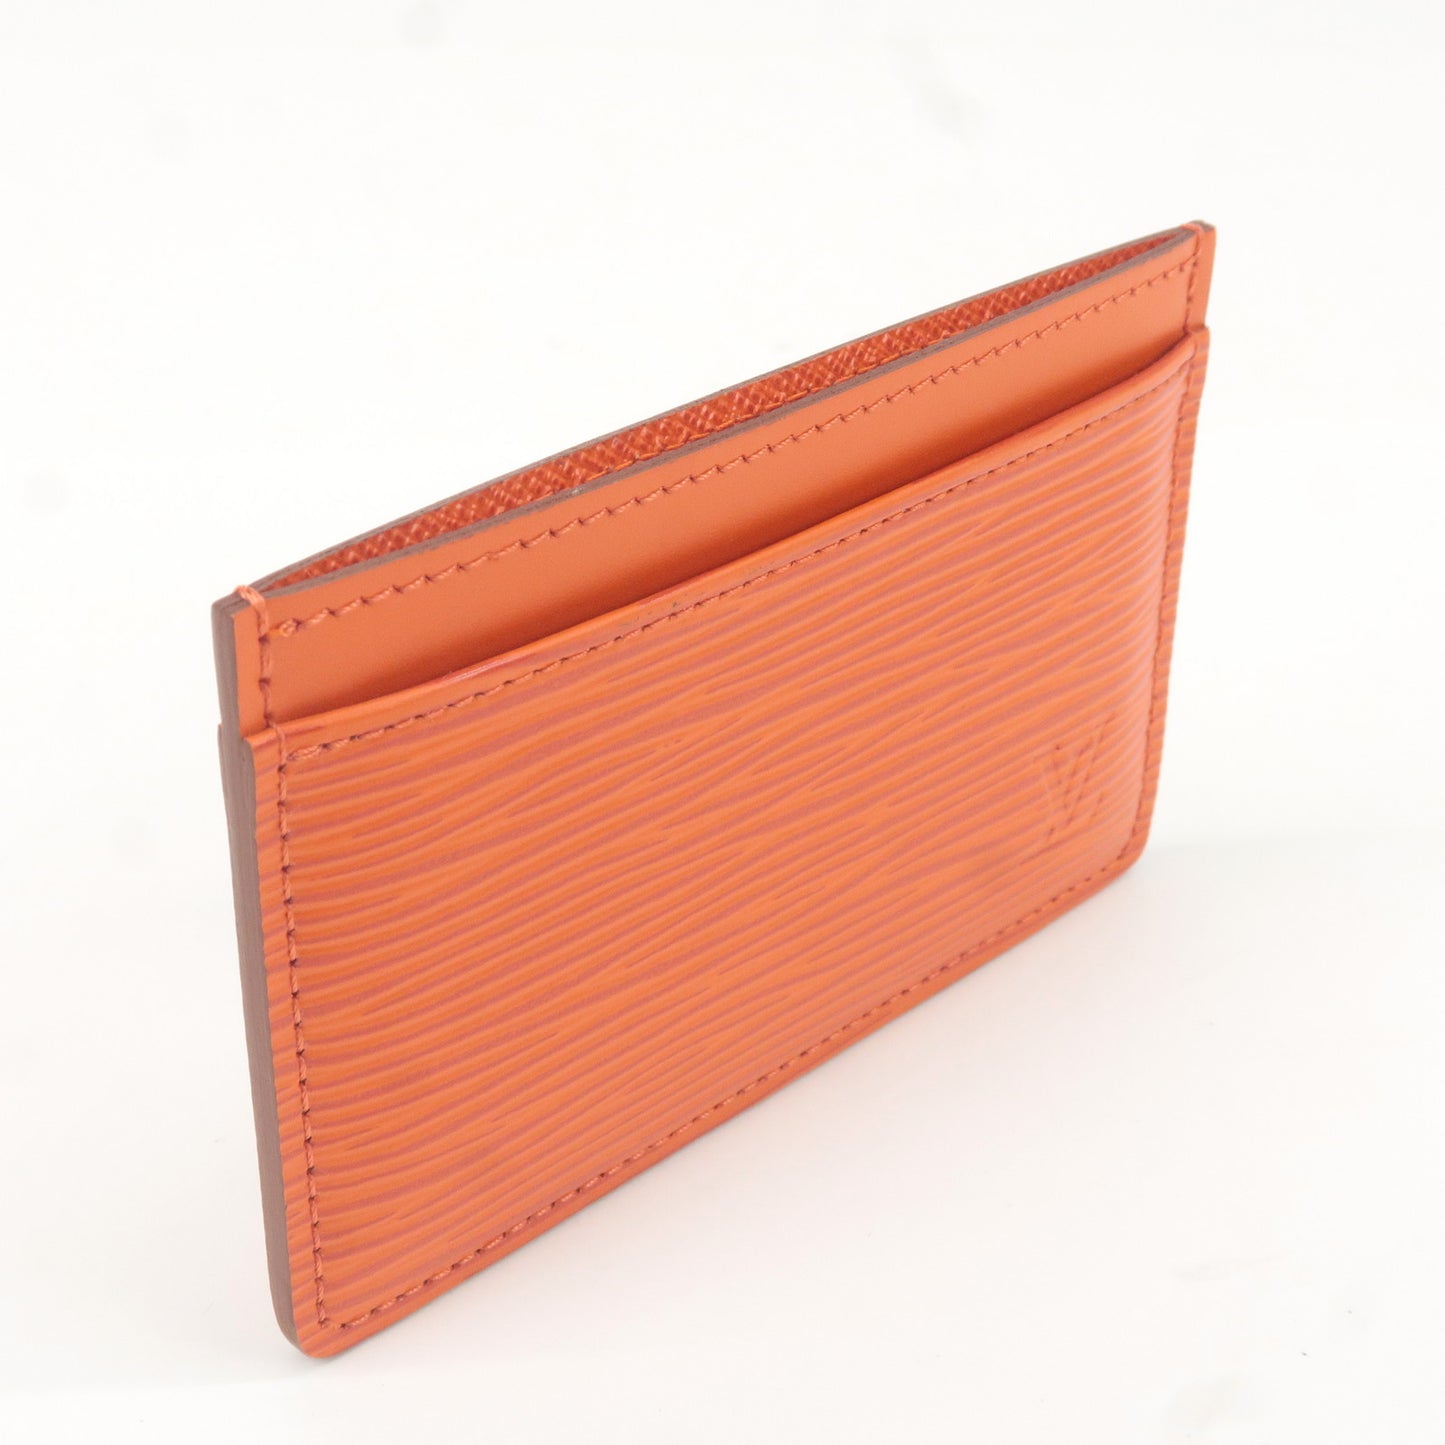 Louis Vuitton Epi Simple Card Case M60333 Epi Leather Card Case Pimont